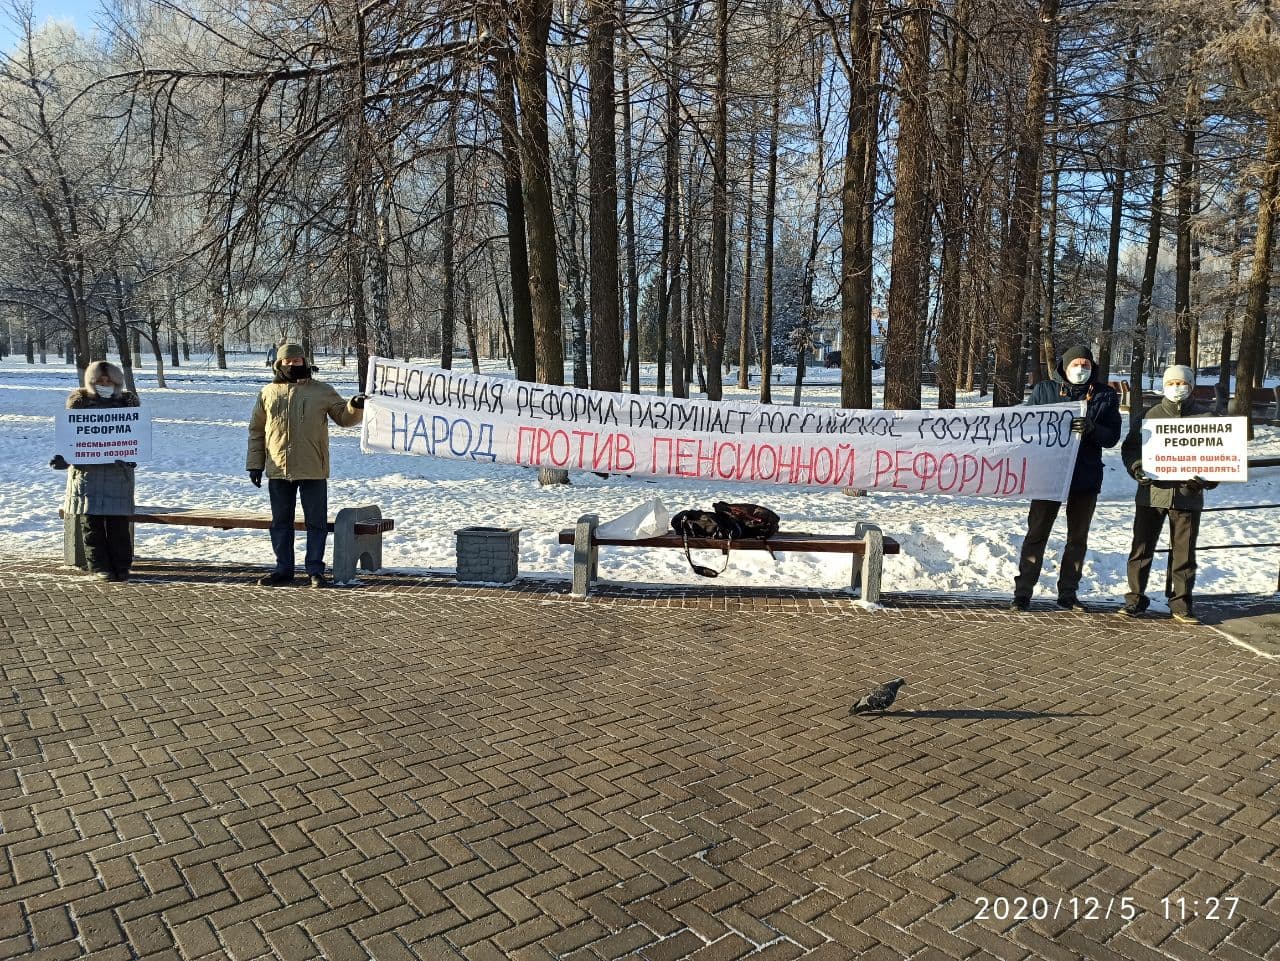 Пикет против пенсионной реформы в Ижевске 5 декабря 2020